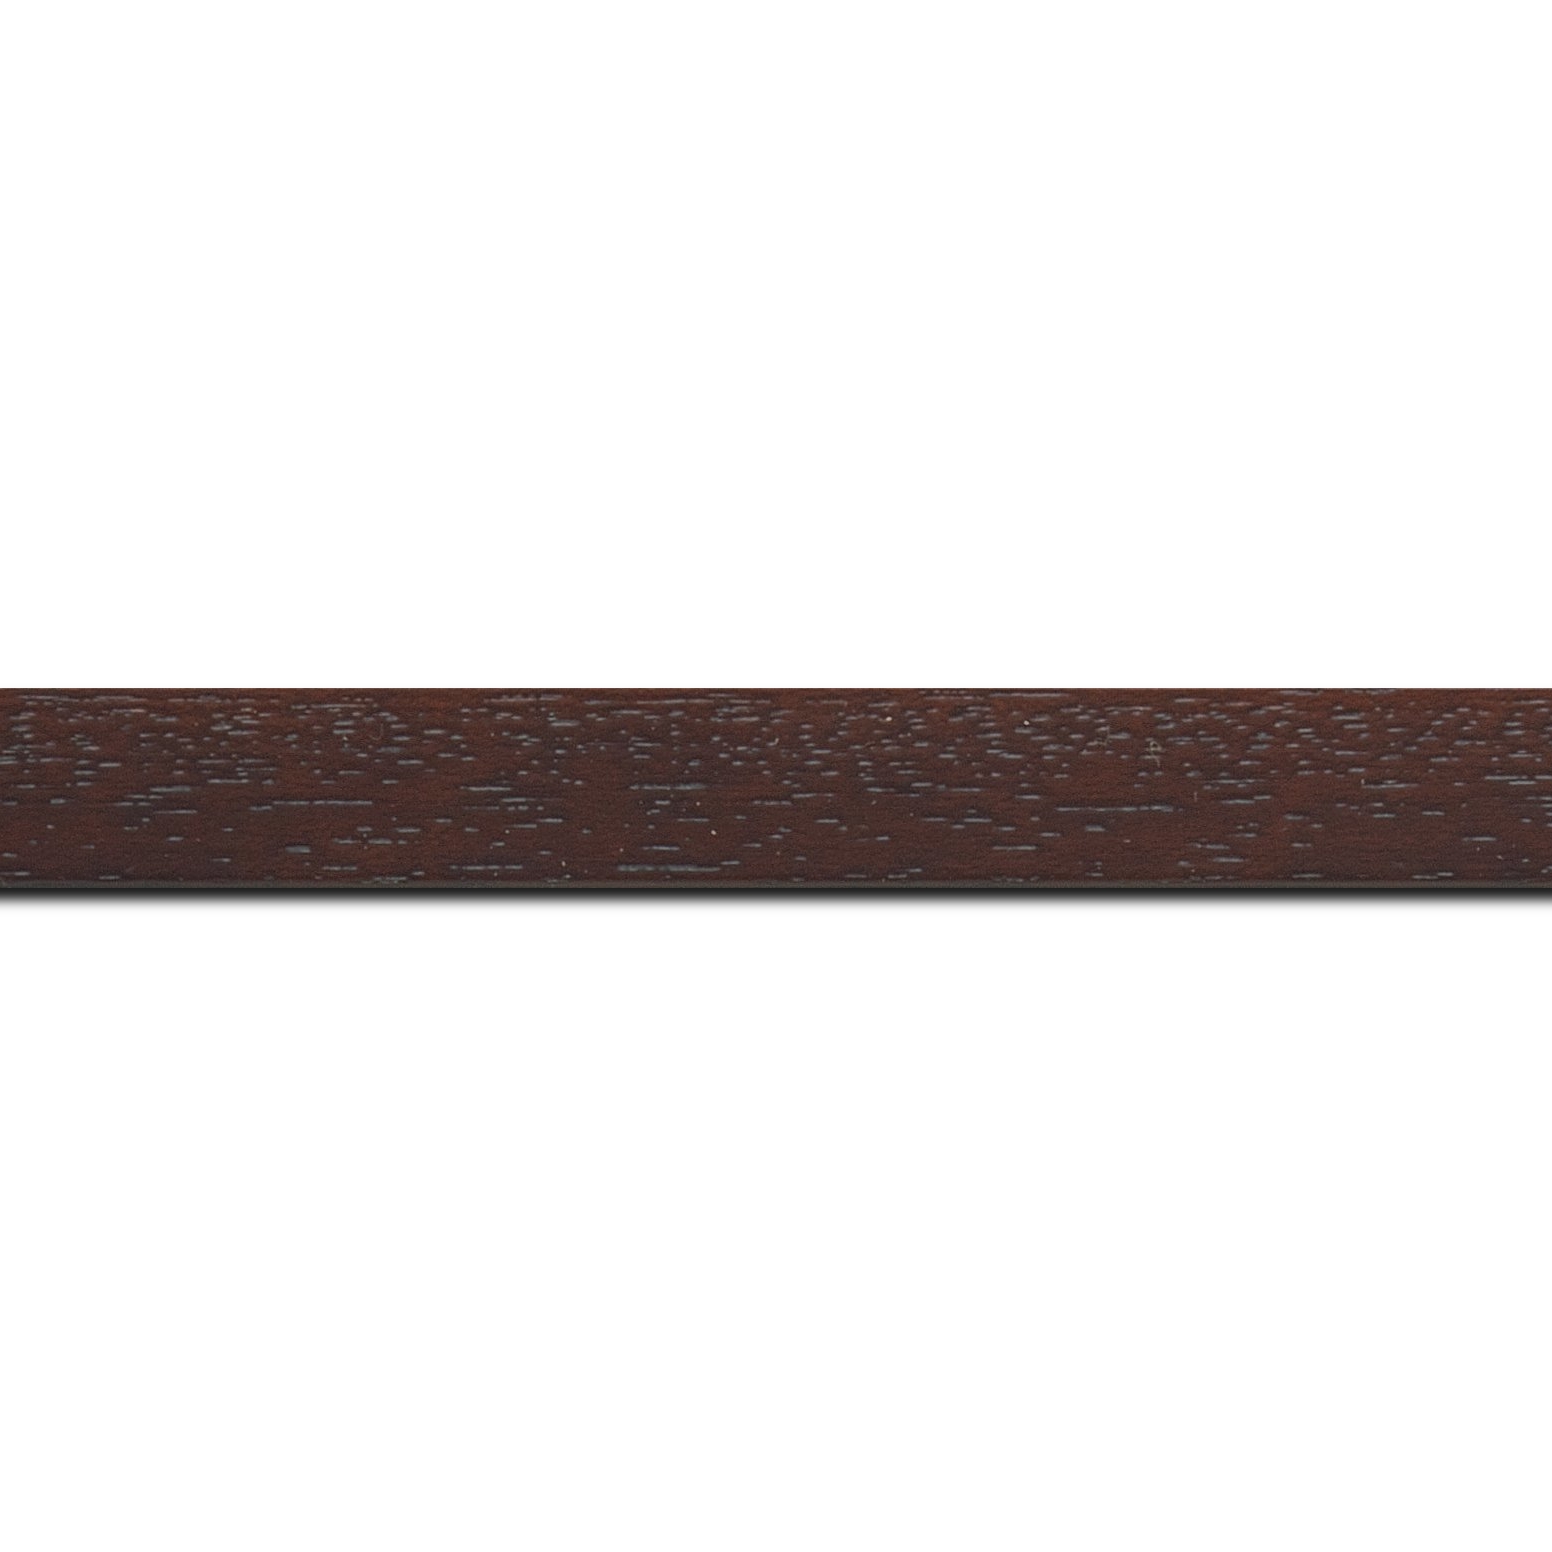 Pack par 12m, bois profil plat largeur 2cm hauteur 3.3cm marron foncé satiné (aussi appelé cache clou)(longueur baguette pouvant varier entre 2.40m et 3m selon arrivage des bois)